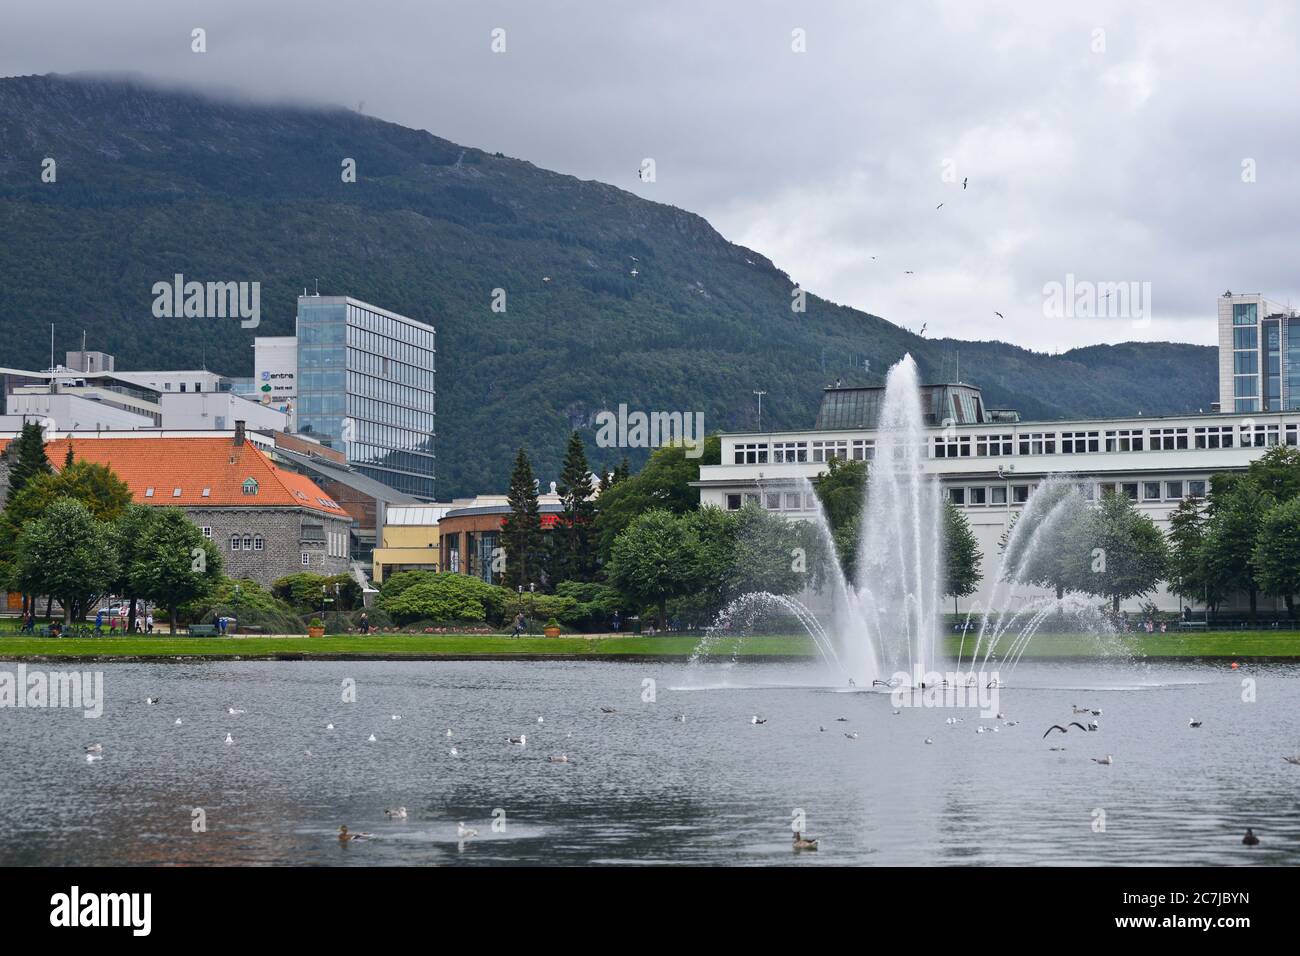 Lille Lungegrdsvannet, Bergen, Norway Stock Photo